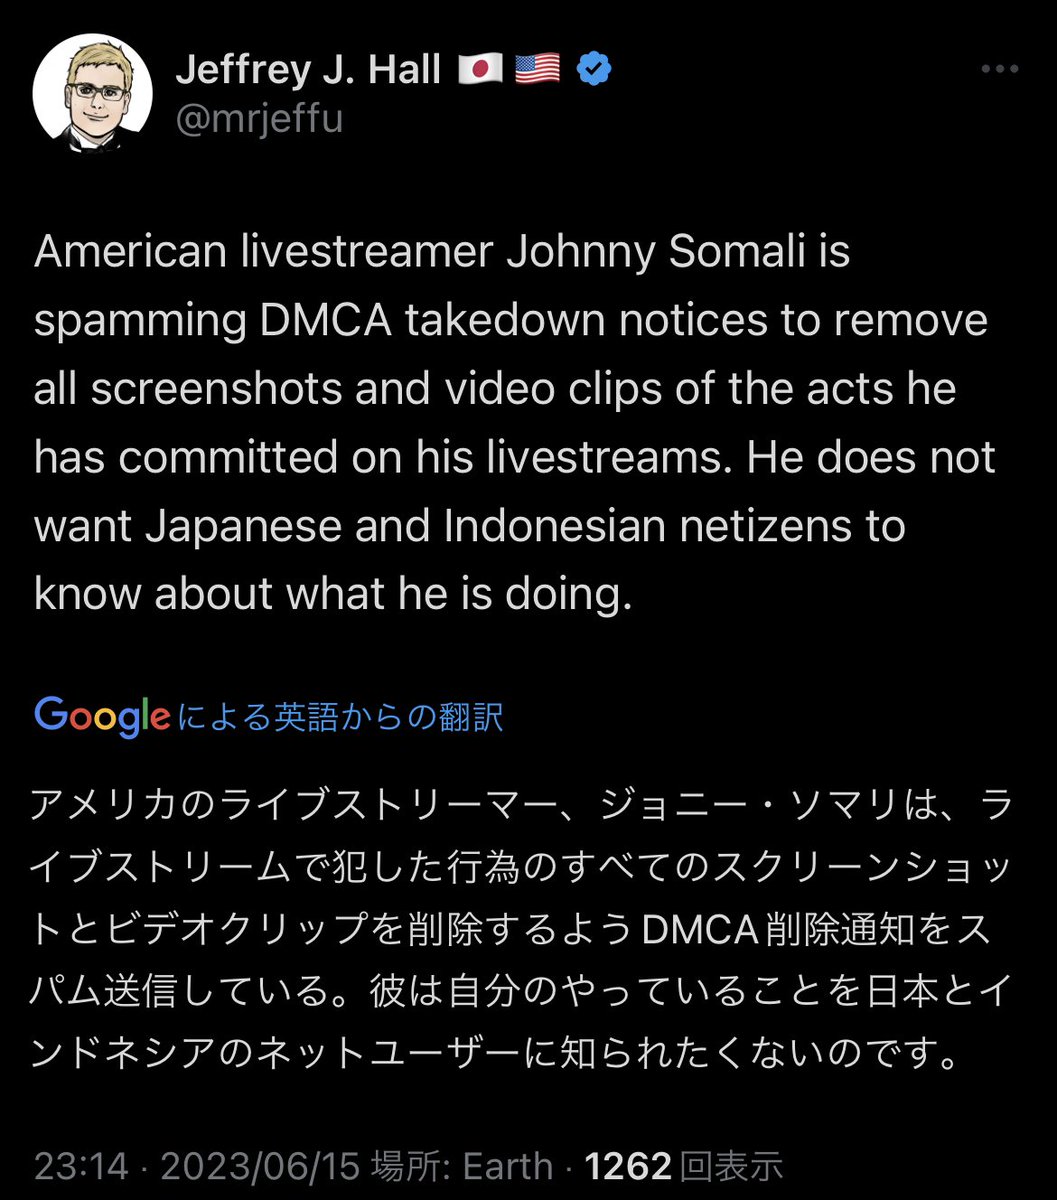 あ、ジョニソマがツイート広めてる人たちを片っ端から報告してんのか
 #ジョニーソマリ #Johnnysomali